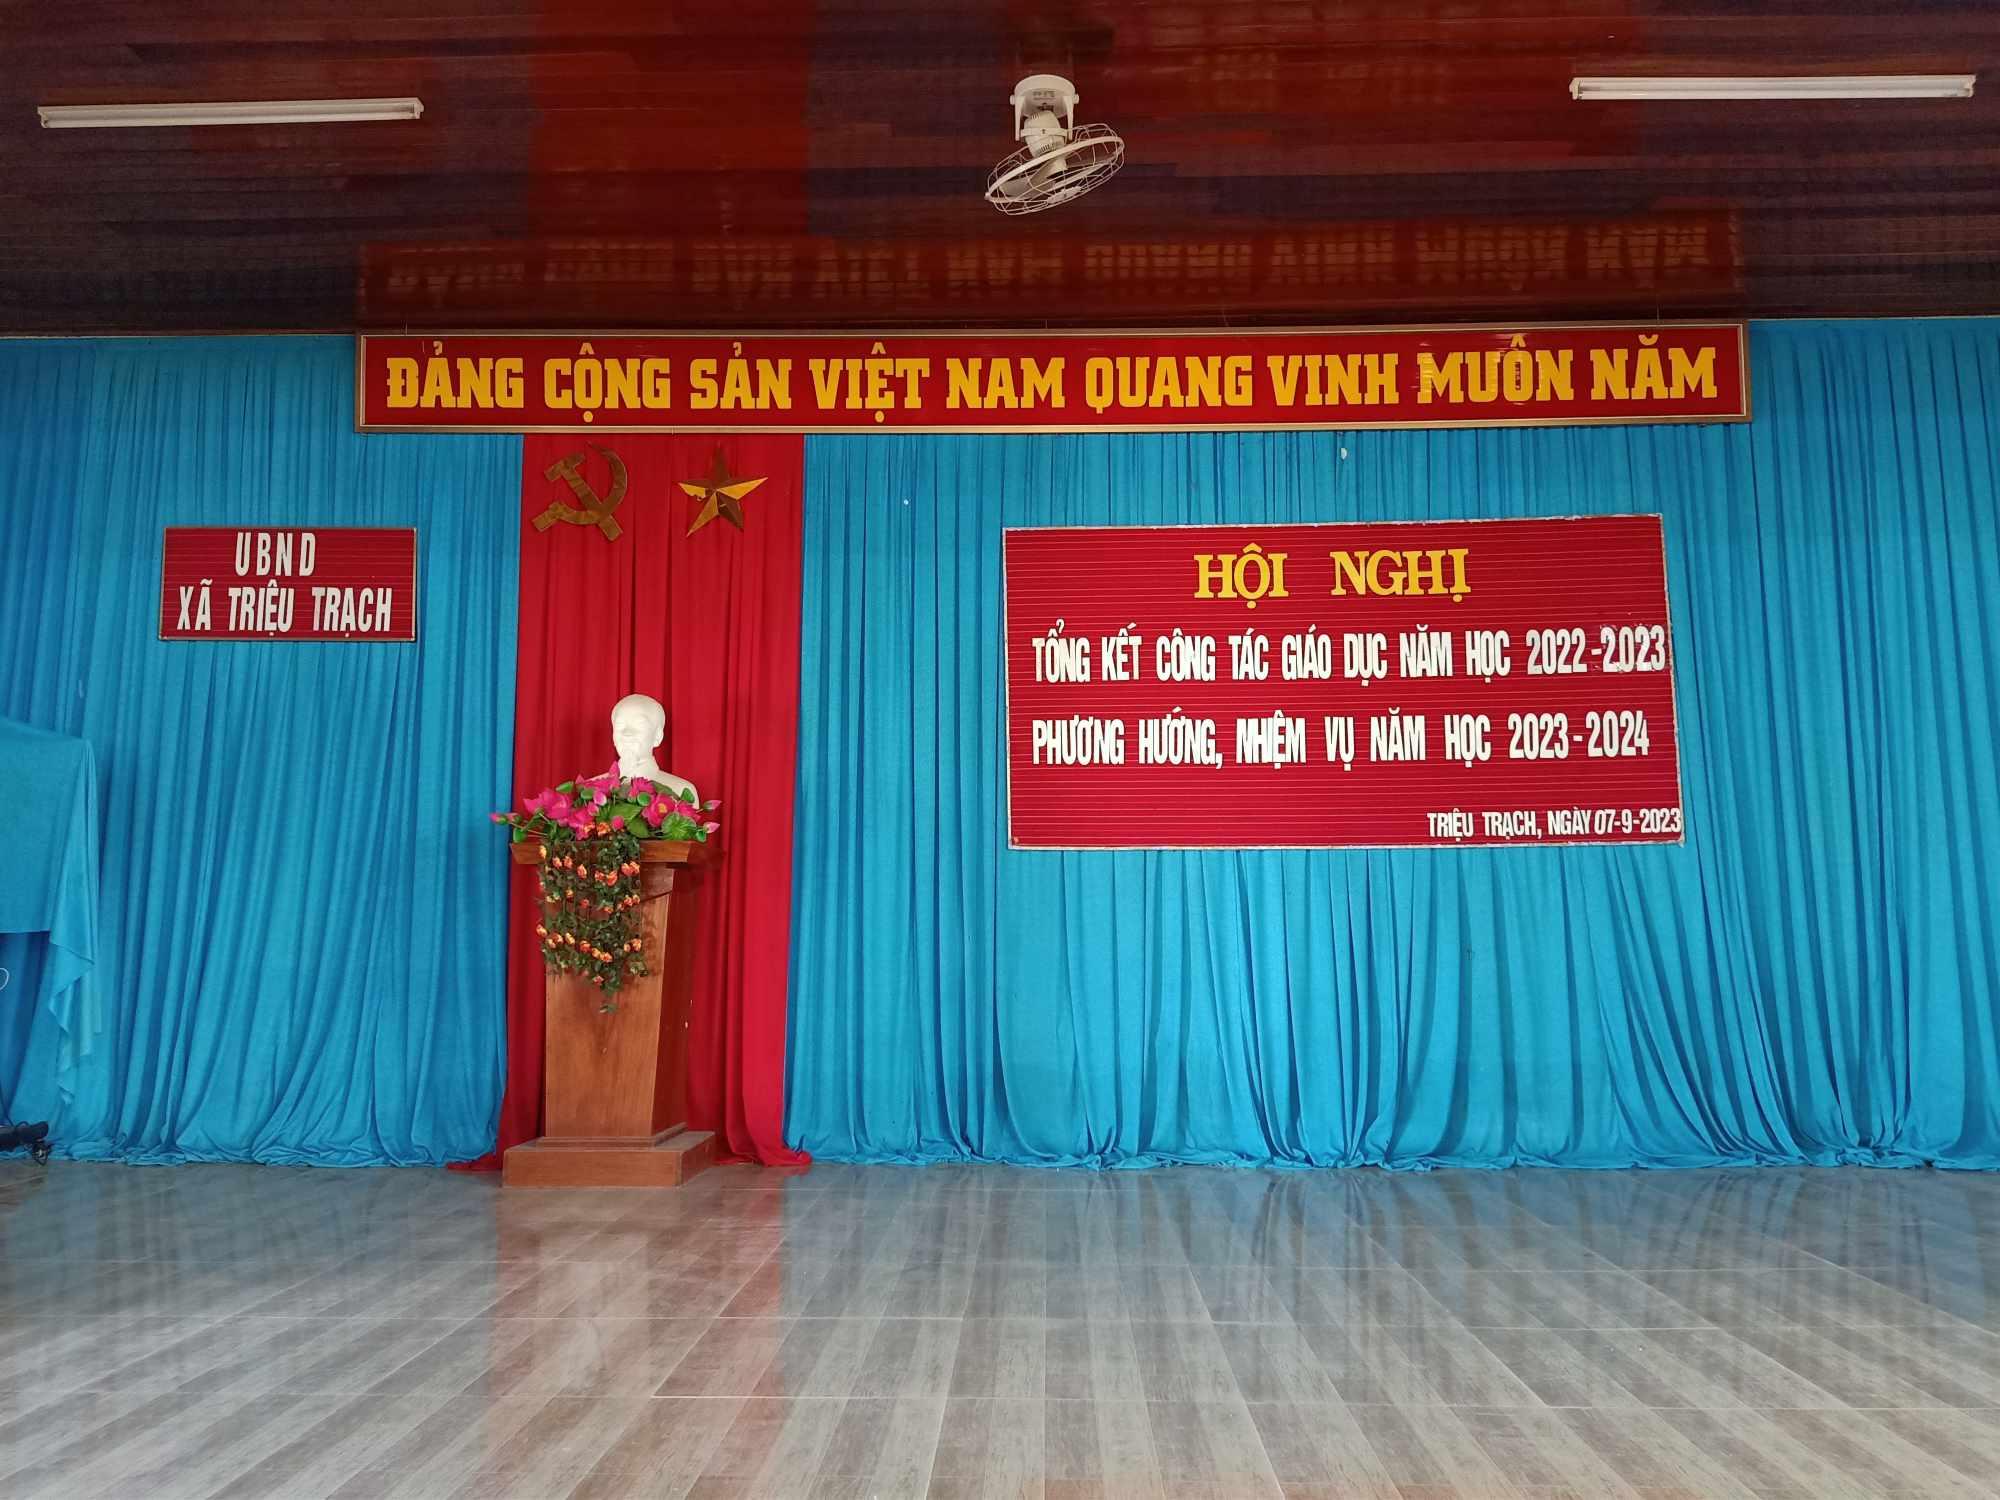 UBND xã Triệu Trạch tổ chức Hội nghị tổng kết công tác giáo dục năm học 2022-2023, phương hướng,...